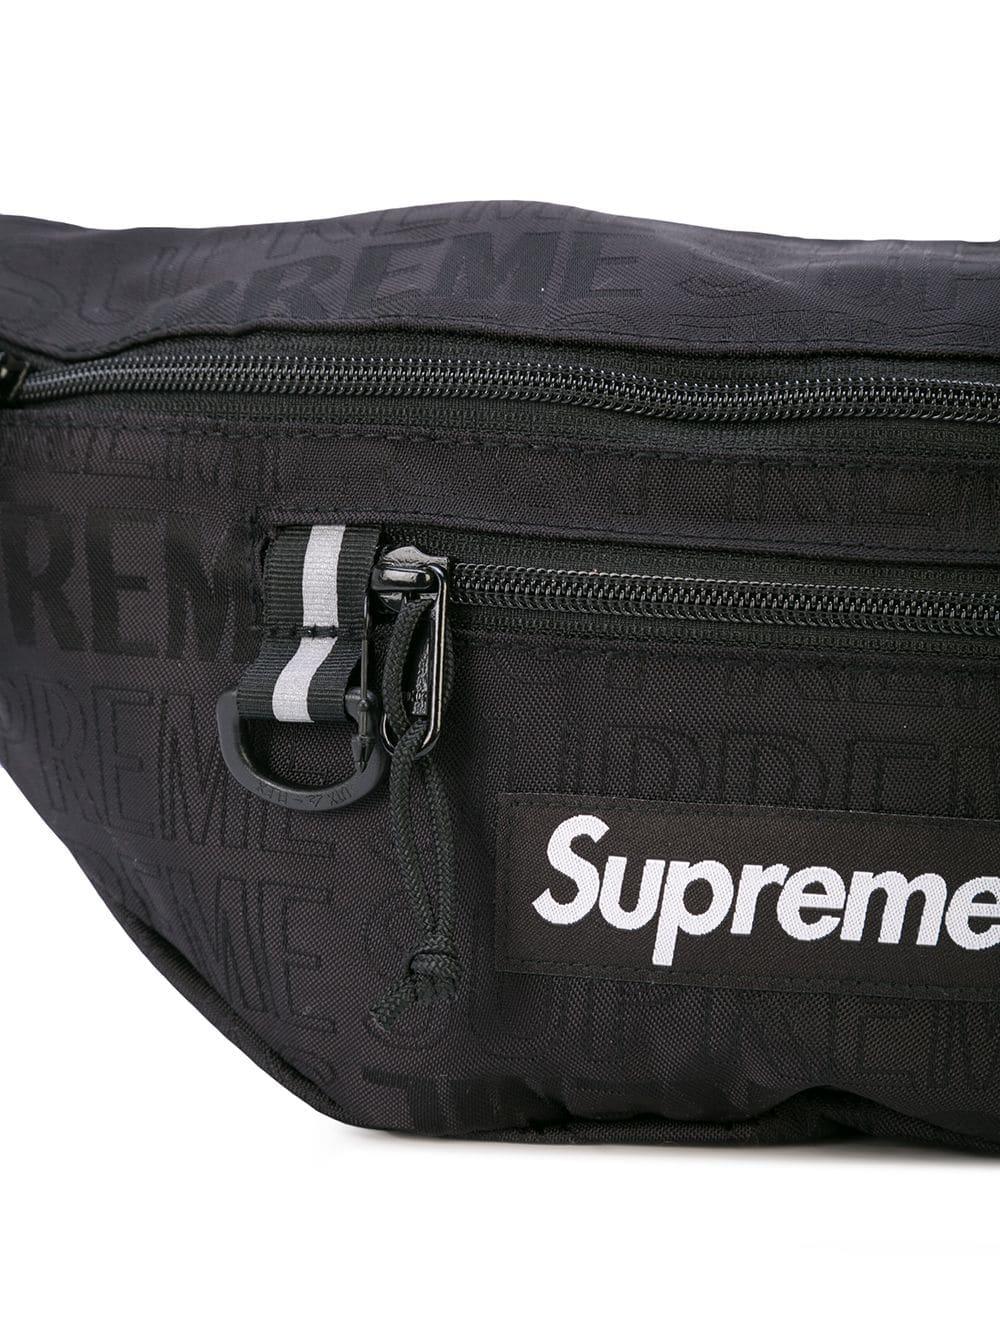 Supreme Logo Patch Belt Bag - Farfetch